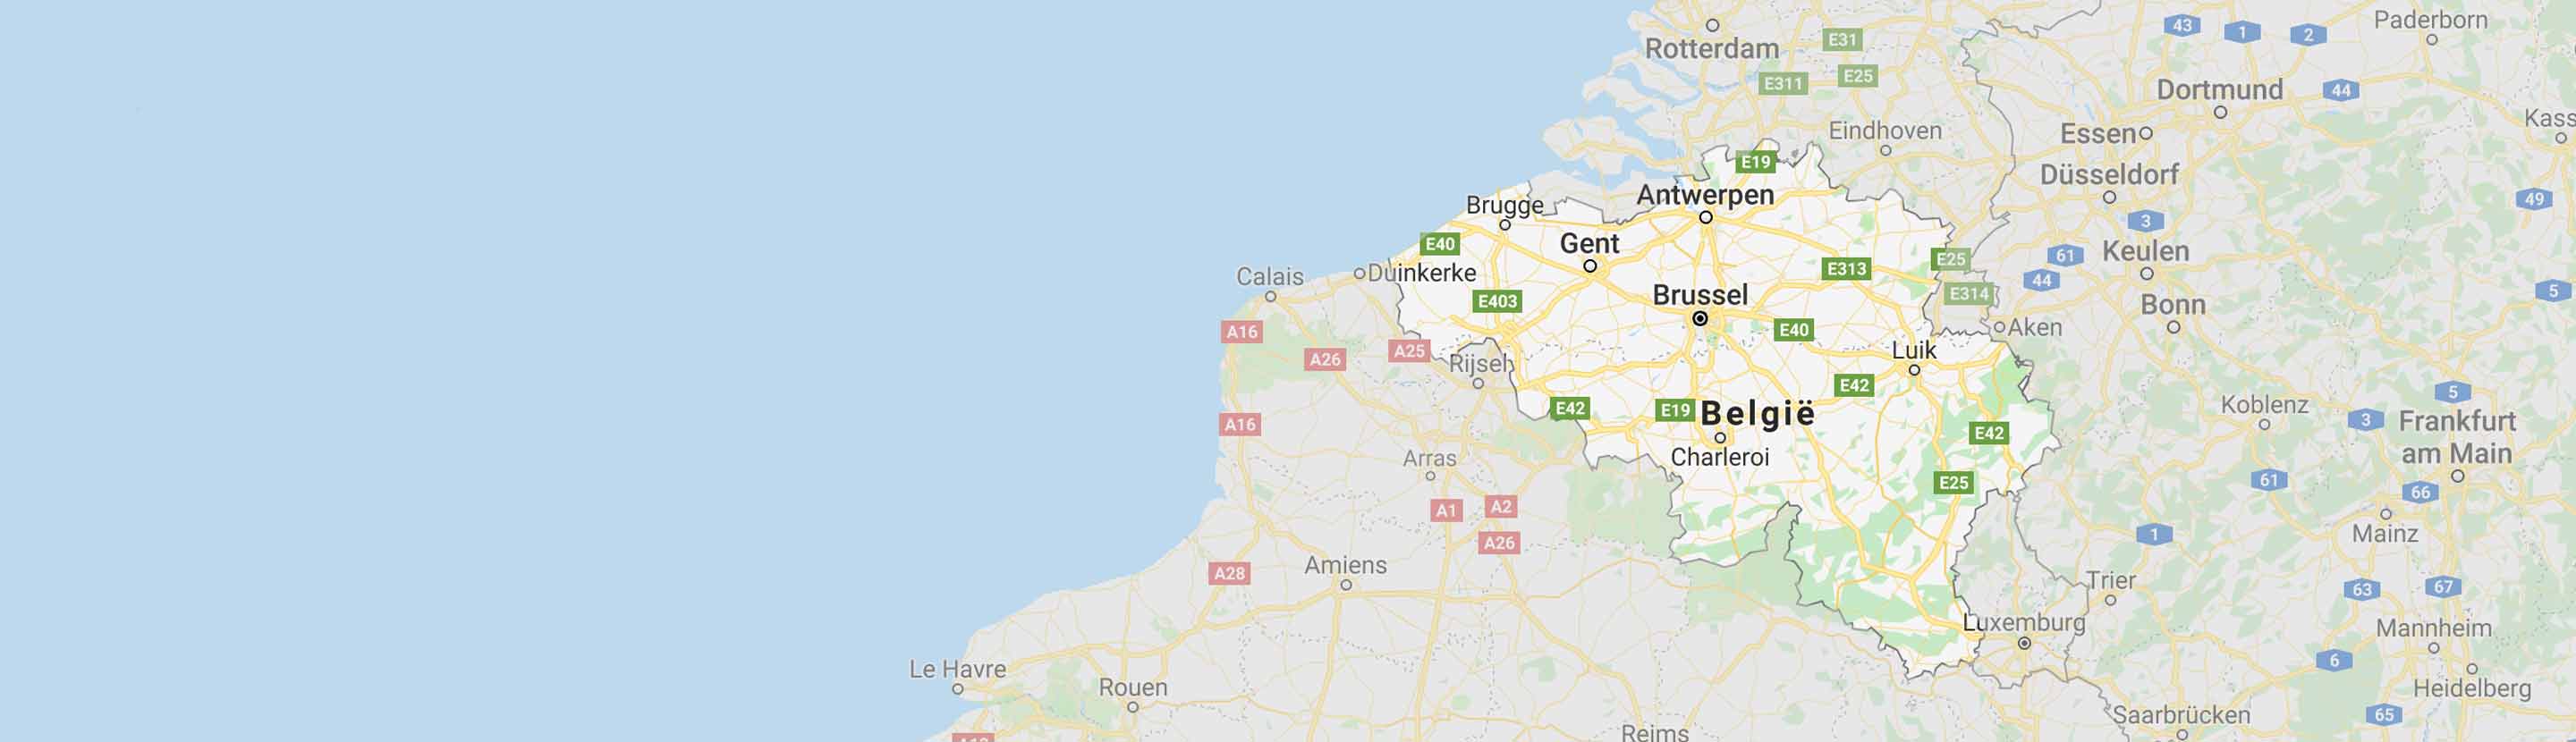 landkaart-belgie-low-res